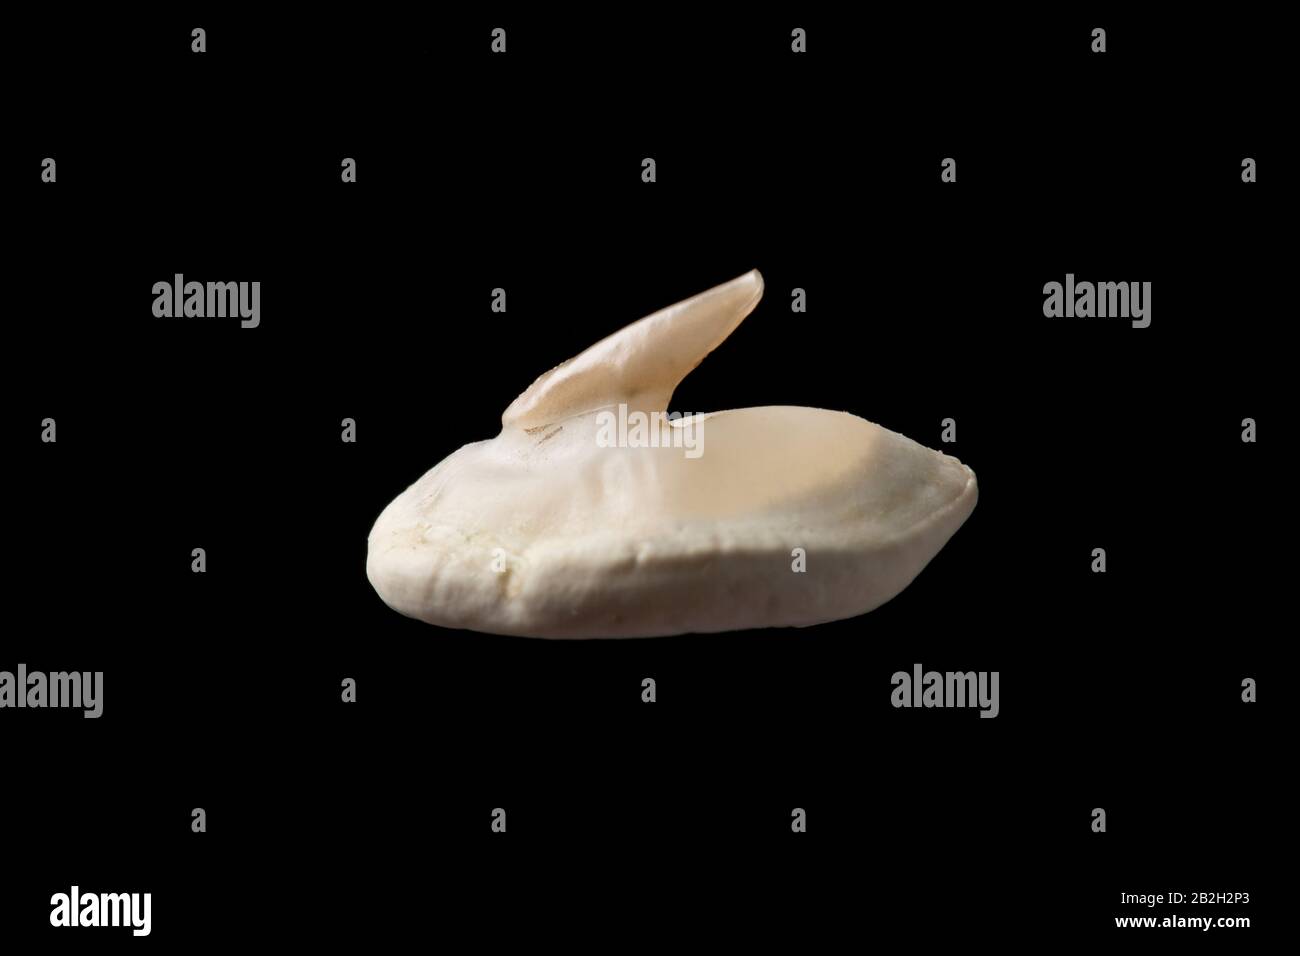 La espina y la placa basal de la piel dorsal de un rayo toracozino, Raja clavata, capturado en el Canal de la Mancha. El lado dorsal y las colas del th maduro Foto de stock